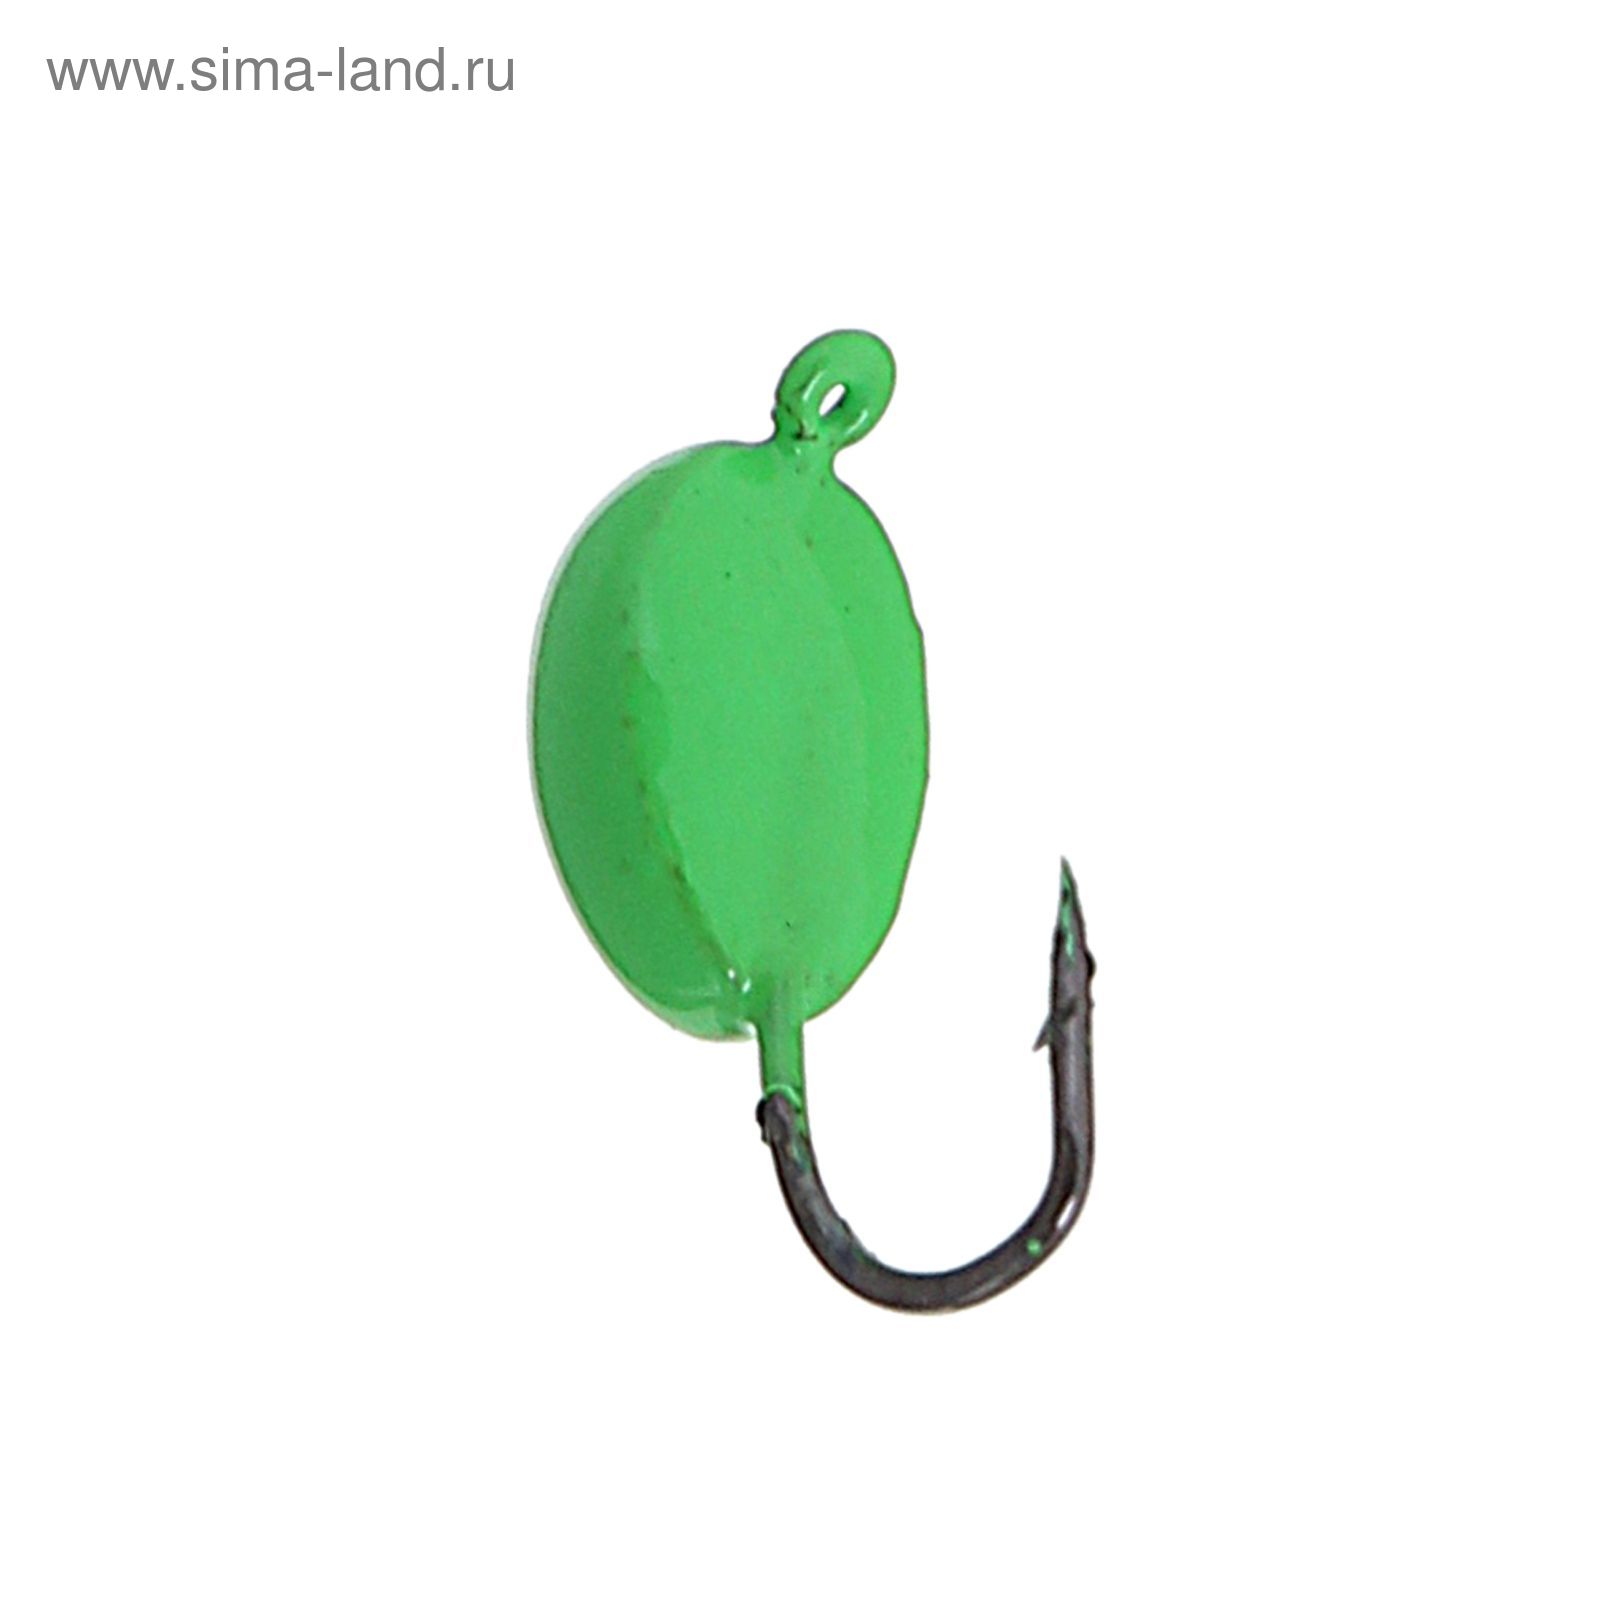 Мормышка вольфрам "Пирс" Клопик, вес 0.7 г, цвет флц.зелёный